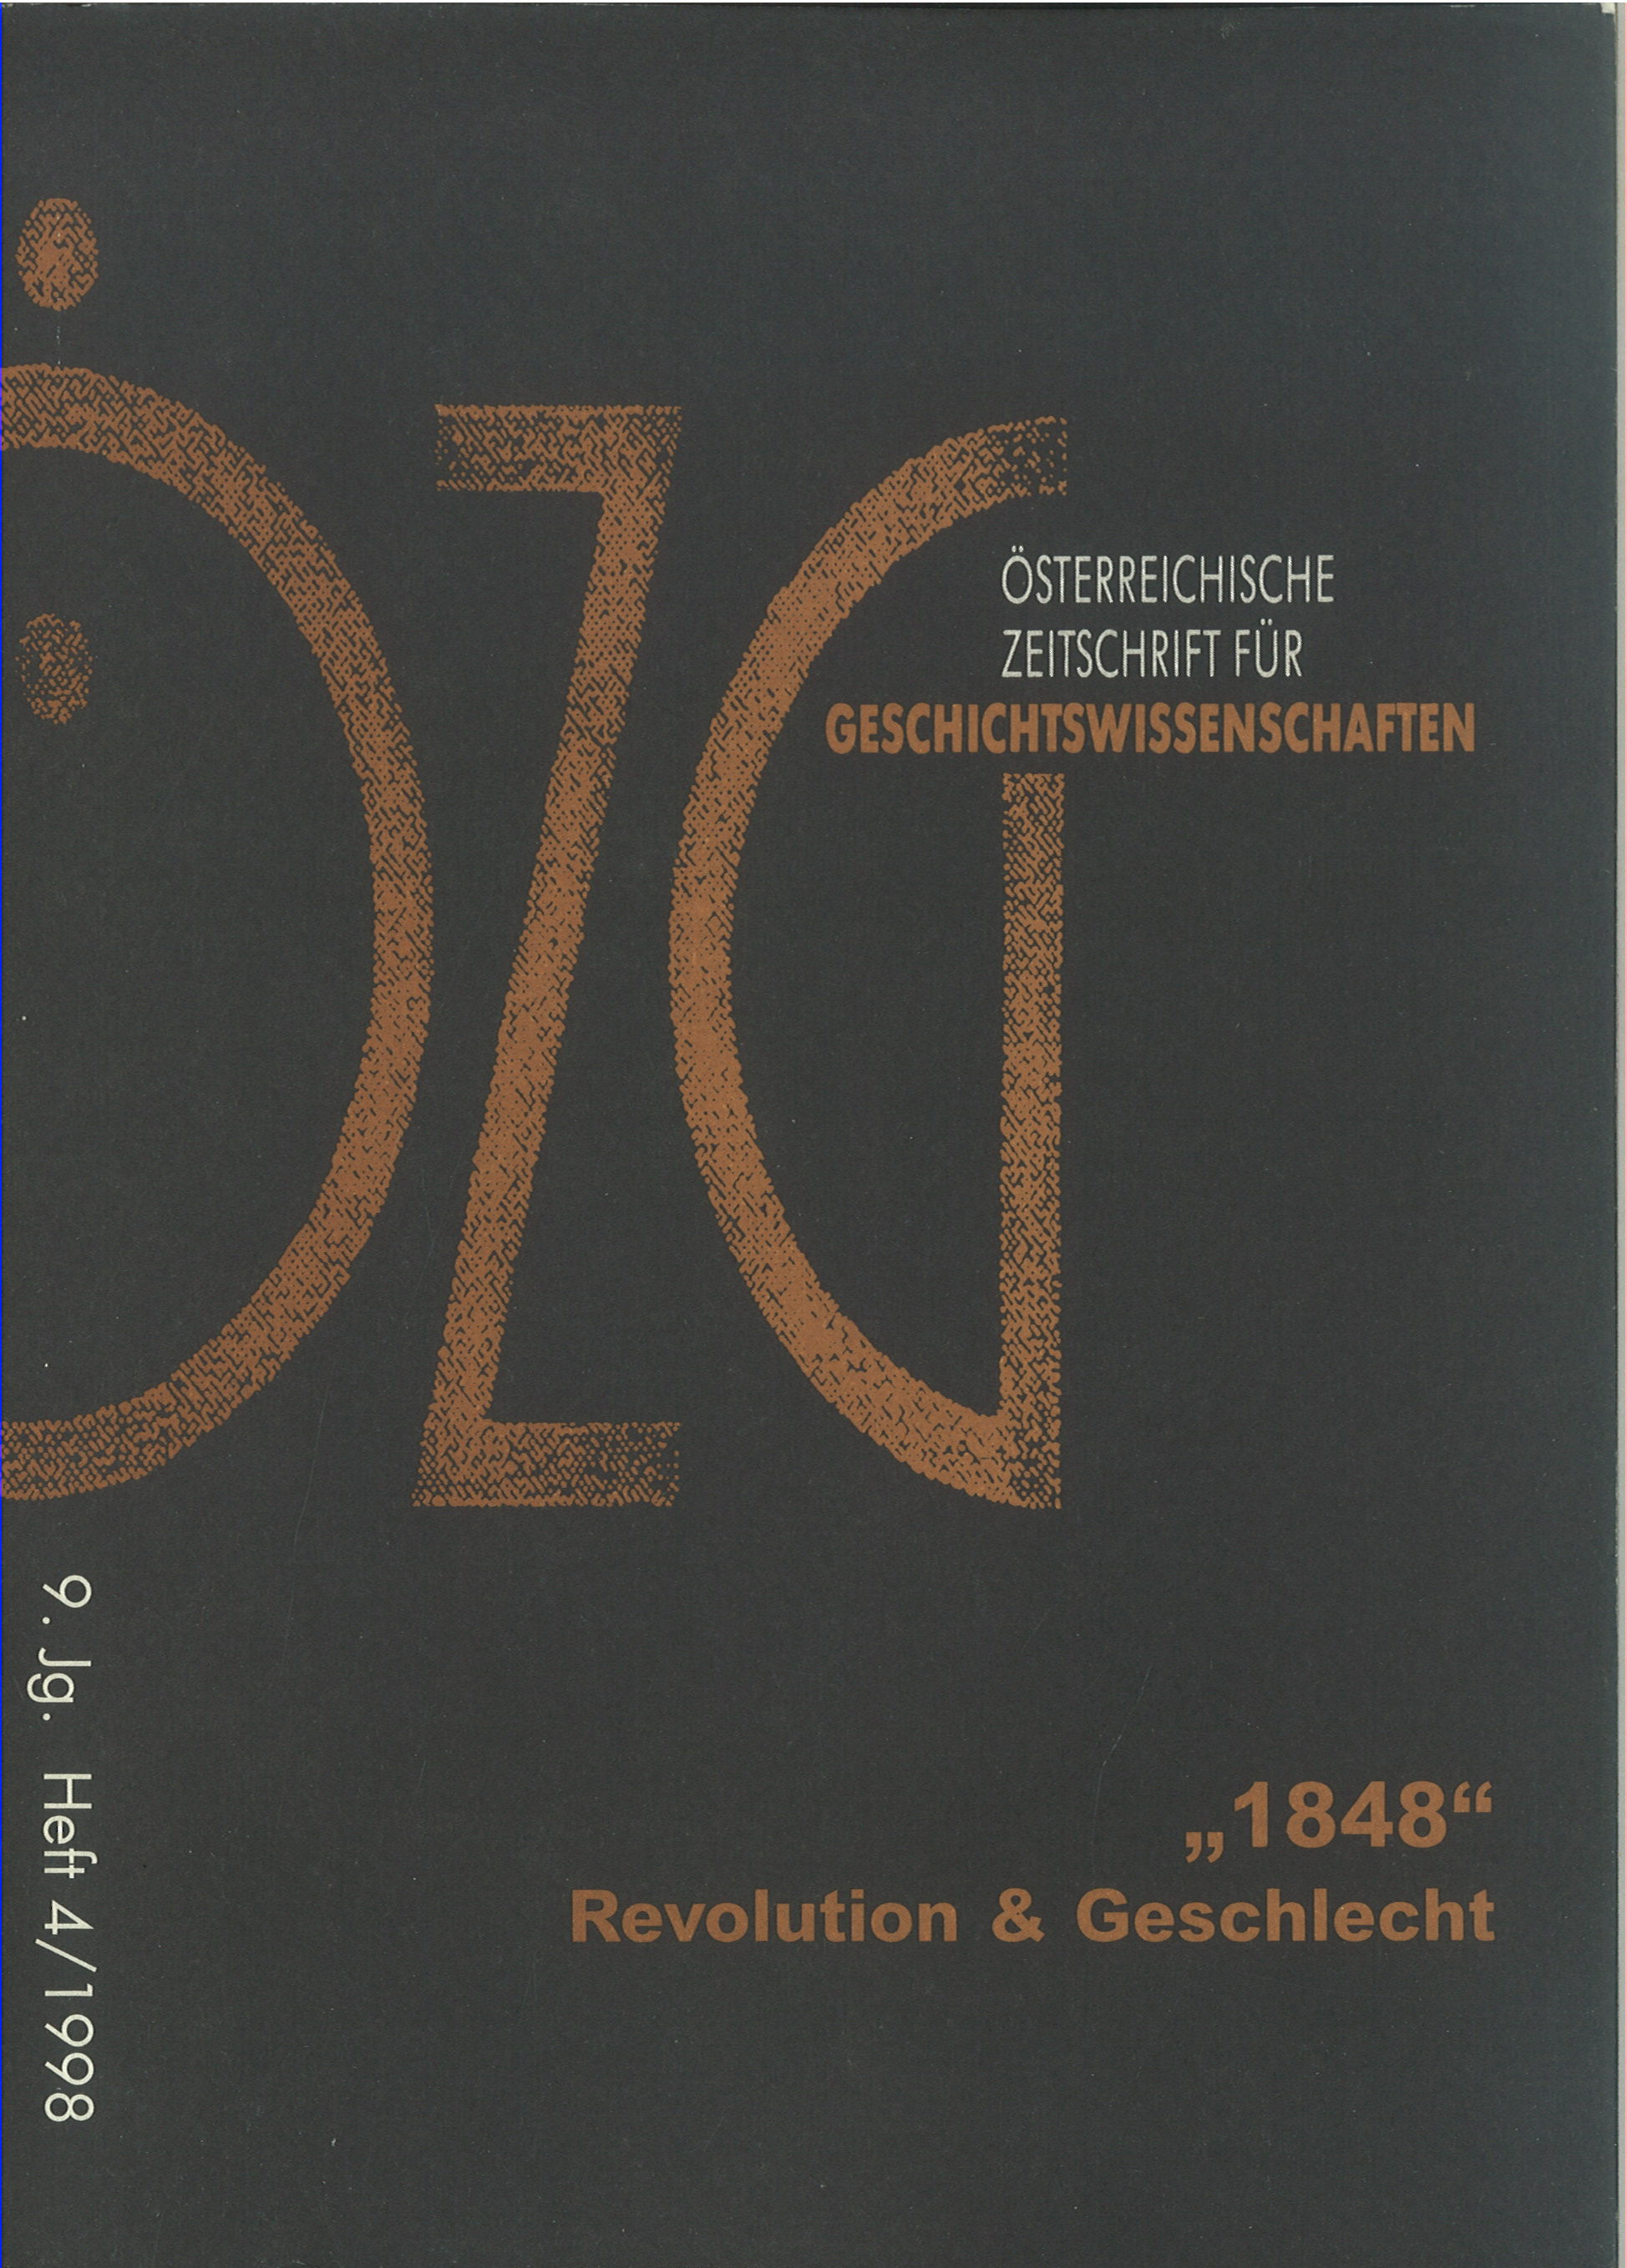 					Ansehen Bd. 9 Nr. 4 (1998): "1848" - Revolution & Geschlecht
				